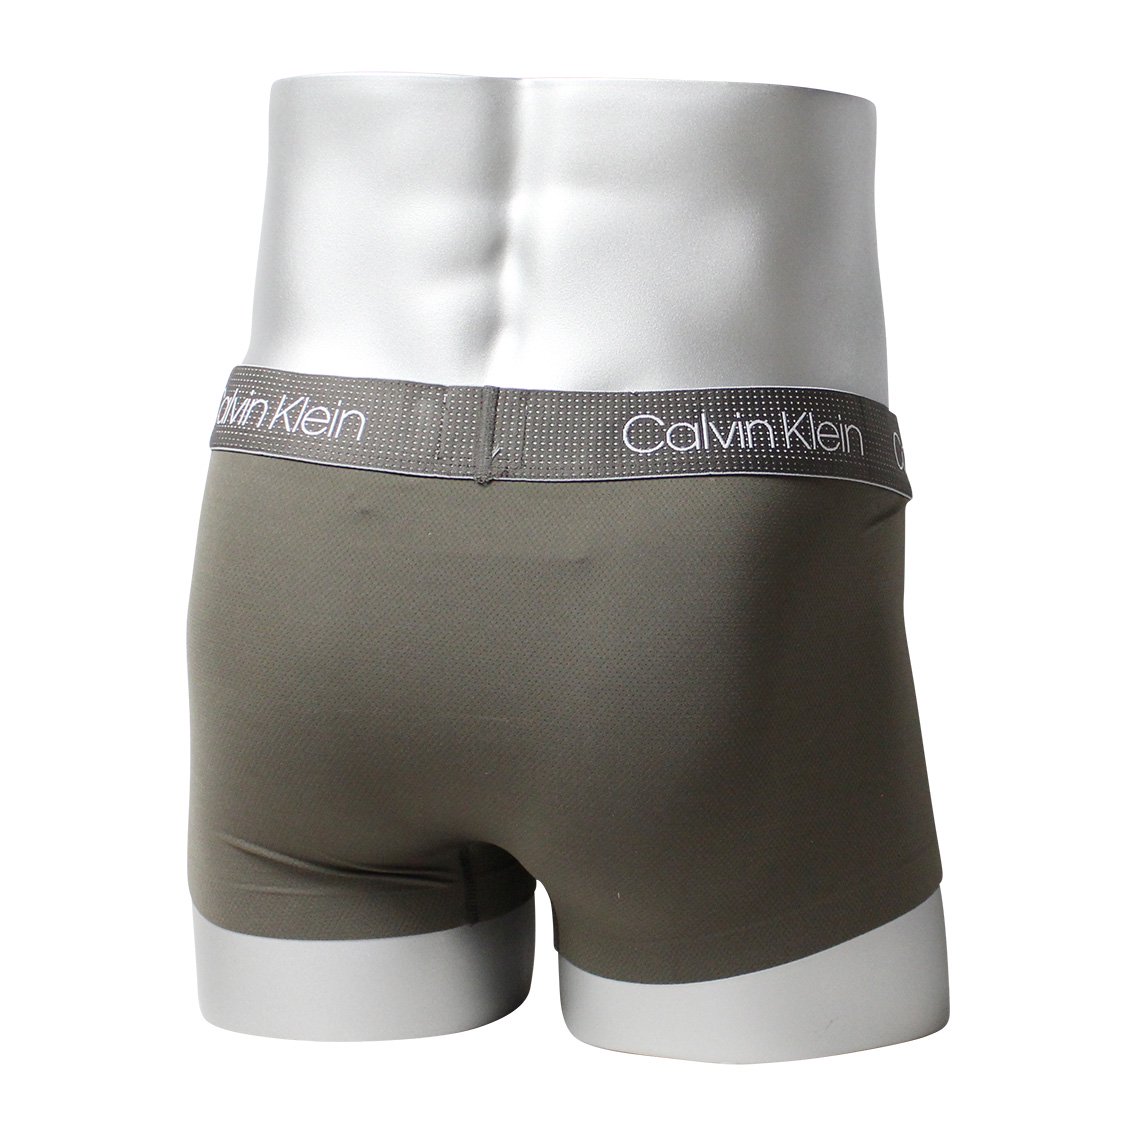 Calvin Klein(カルバンクライン)[NB2753-030]:ボクサーパンツ,男性下着,インナーの通販